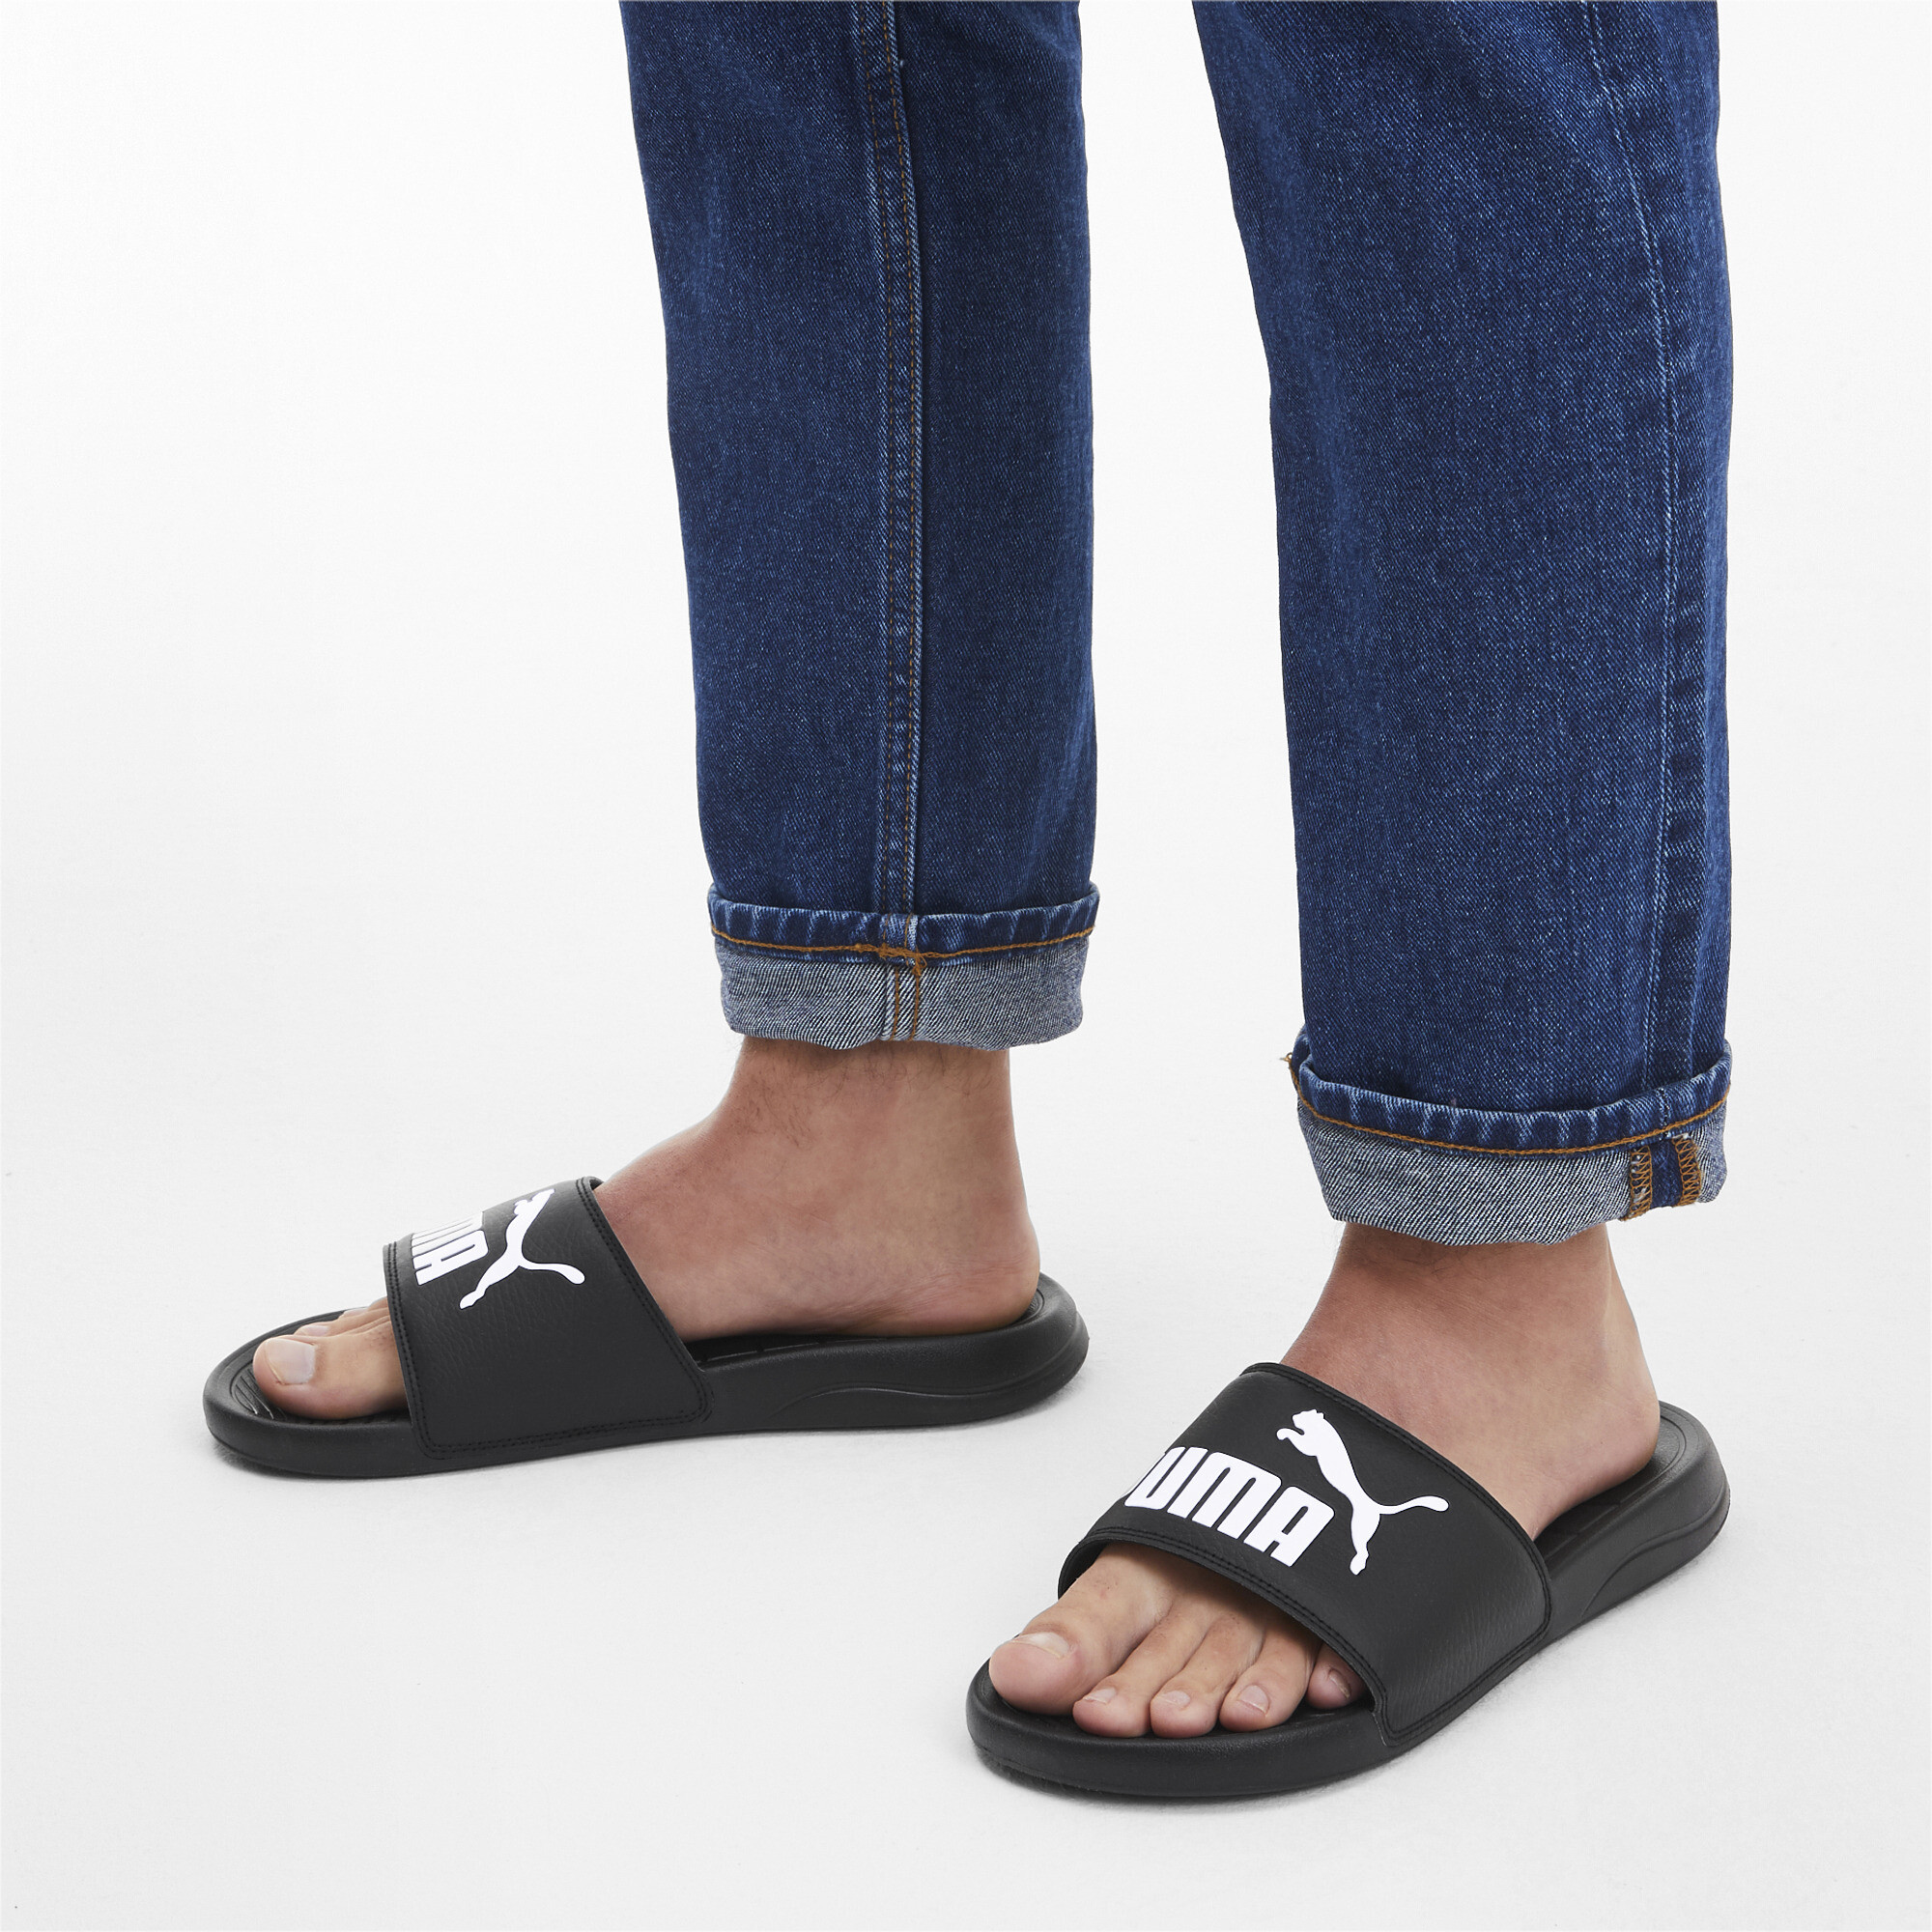 Men's PUMA Popcat 20 Sandals In Black, Size EU 38